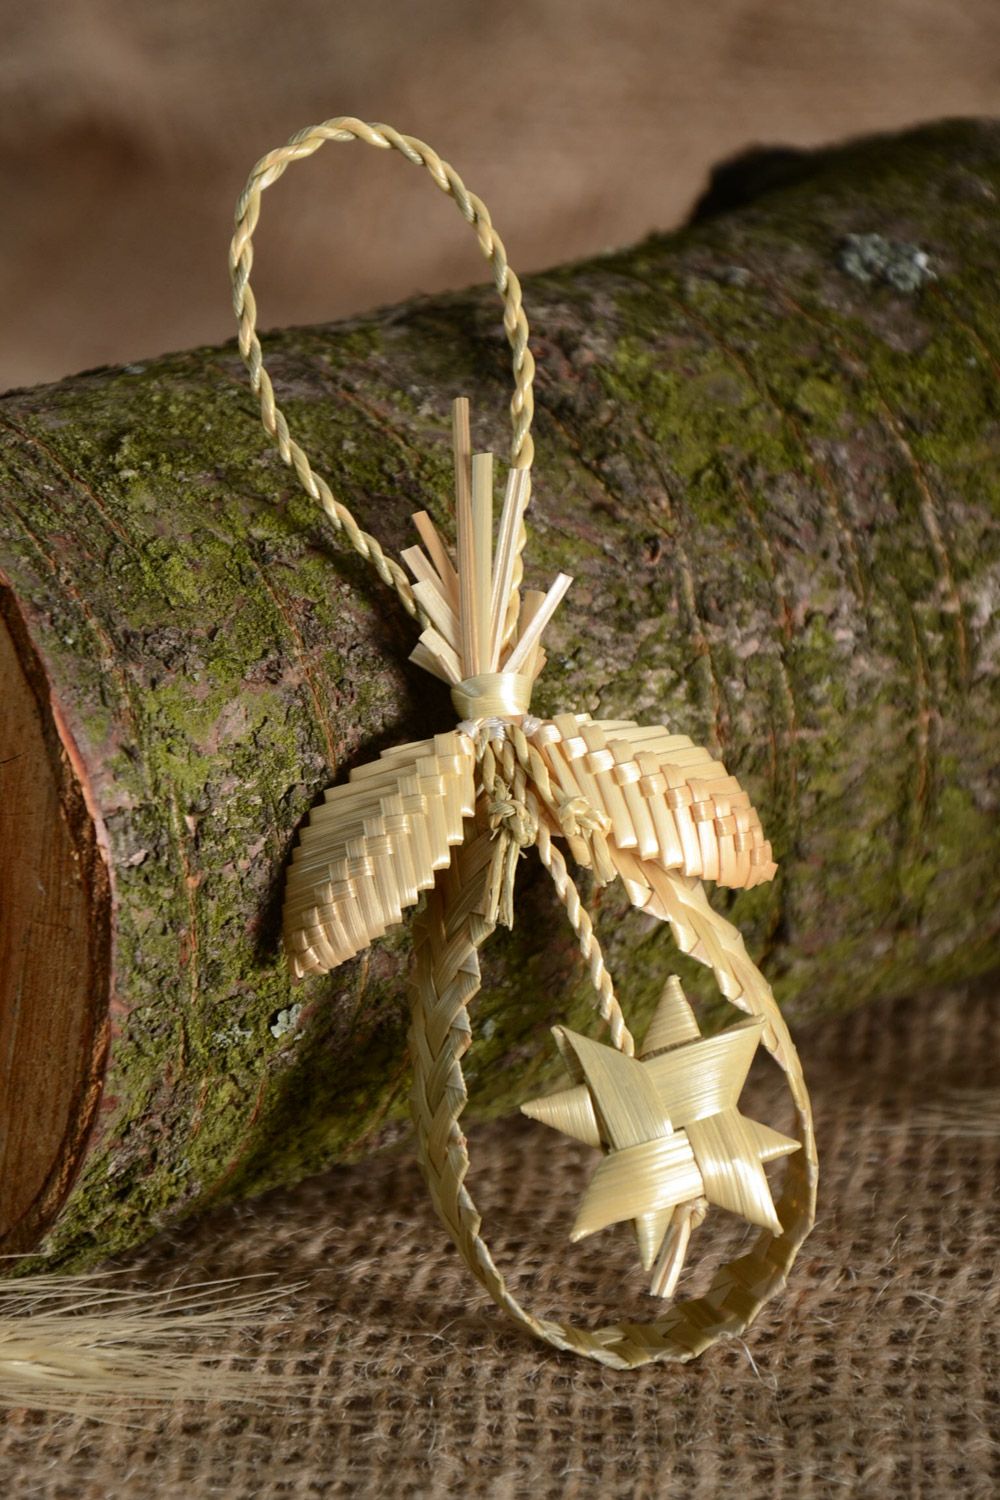 Интерьерная подвеска плетеная из соломы ручной работы игрушка на елку фото 1